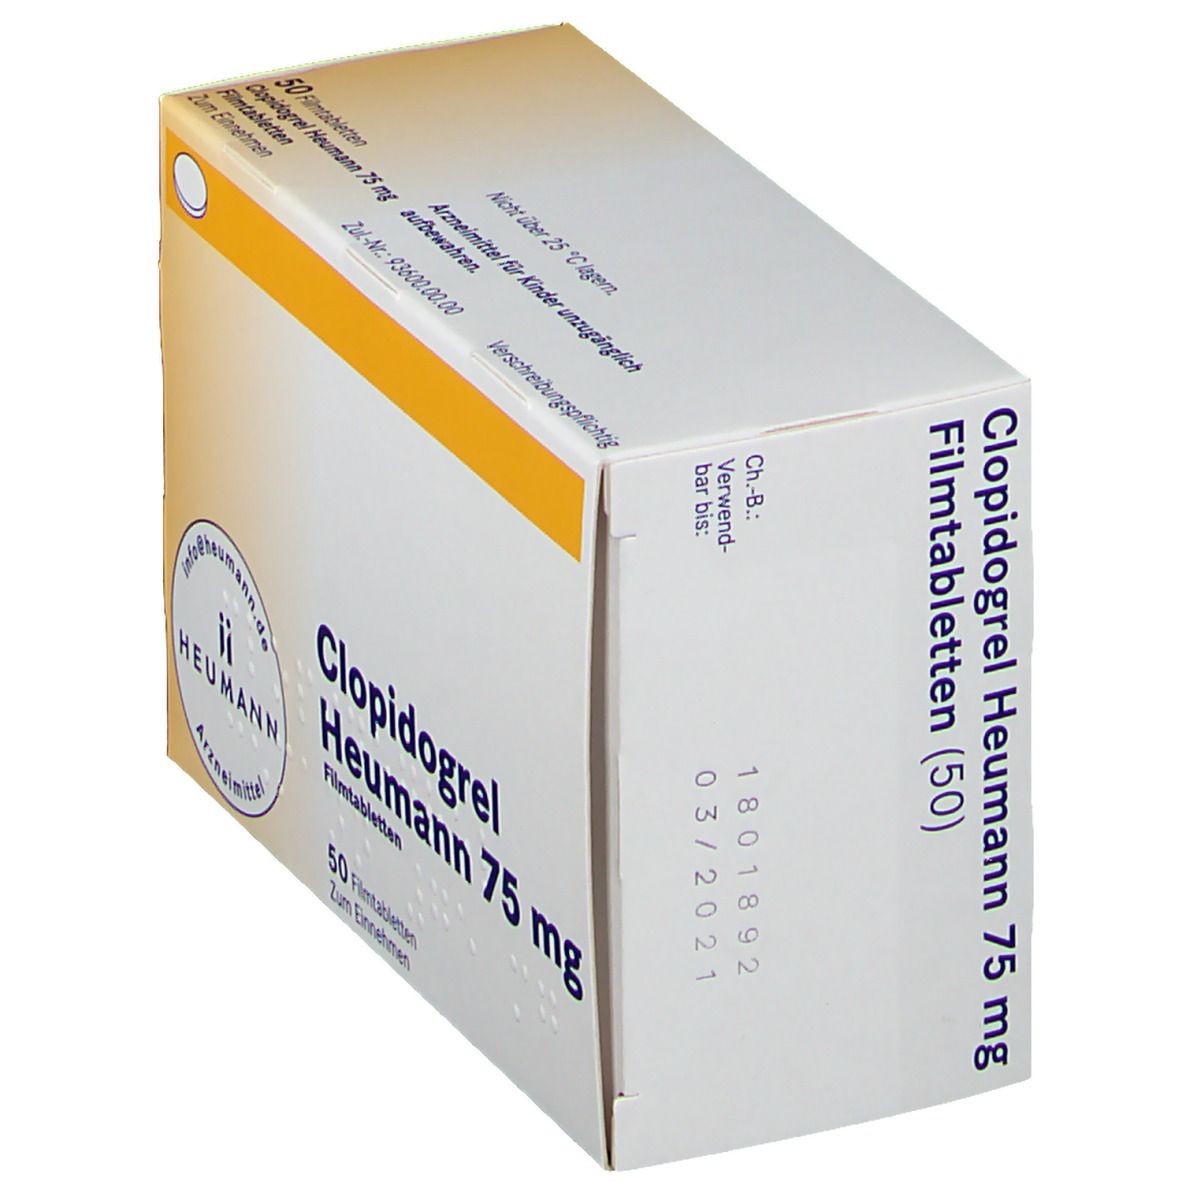 Clopidogrel Heumann 75 mg